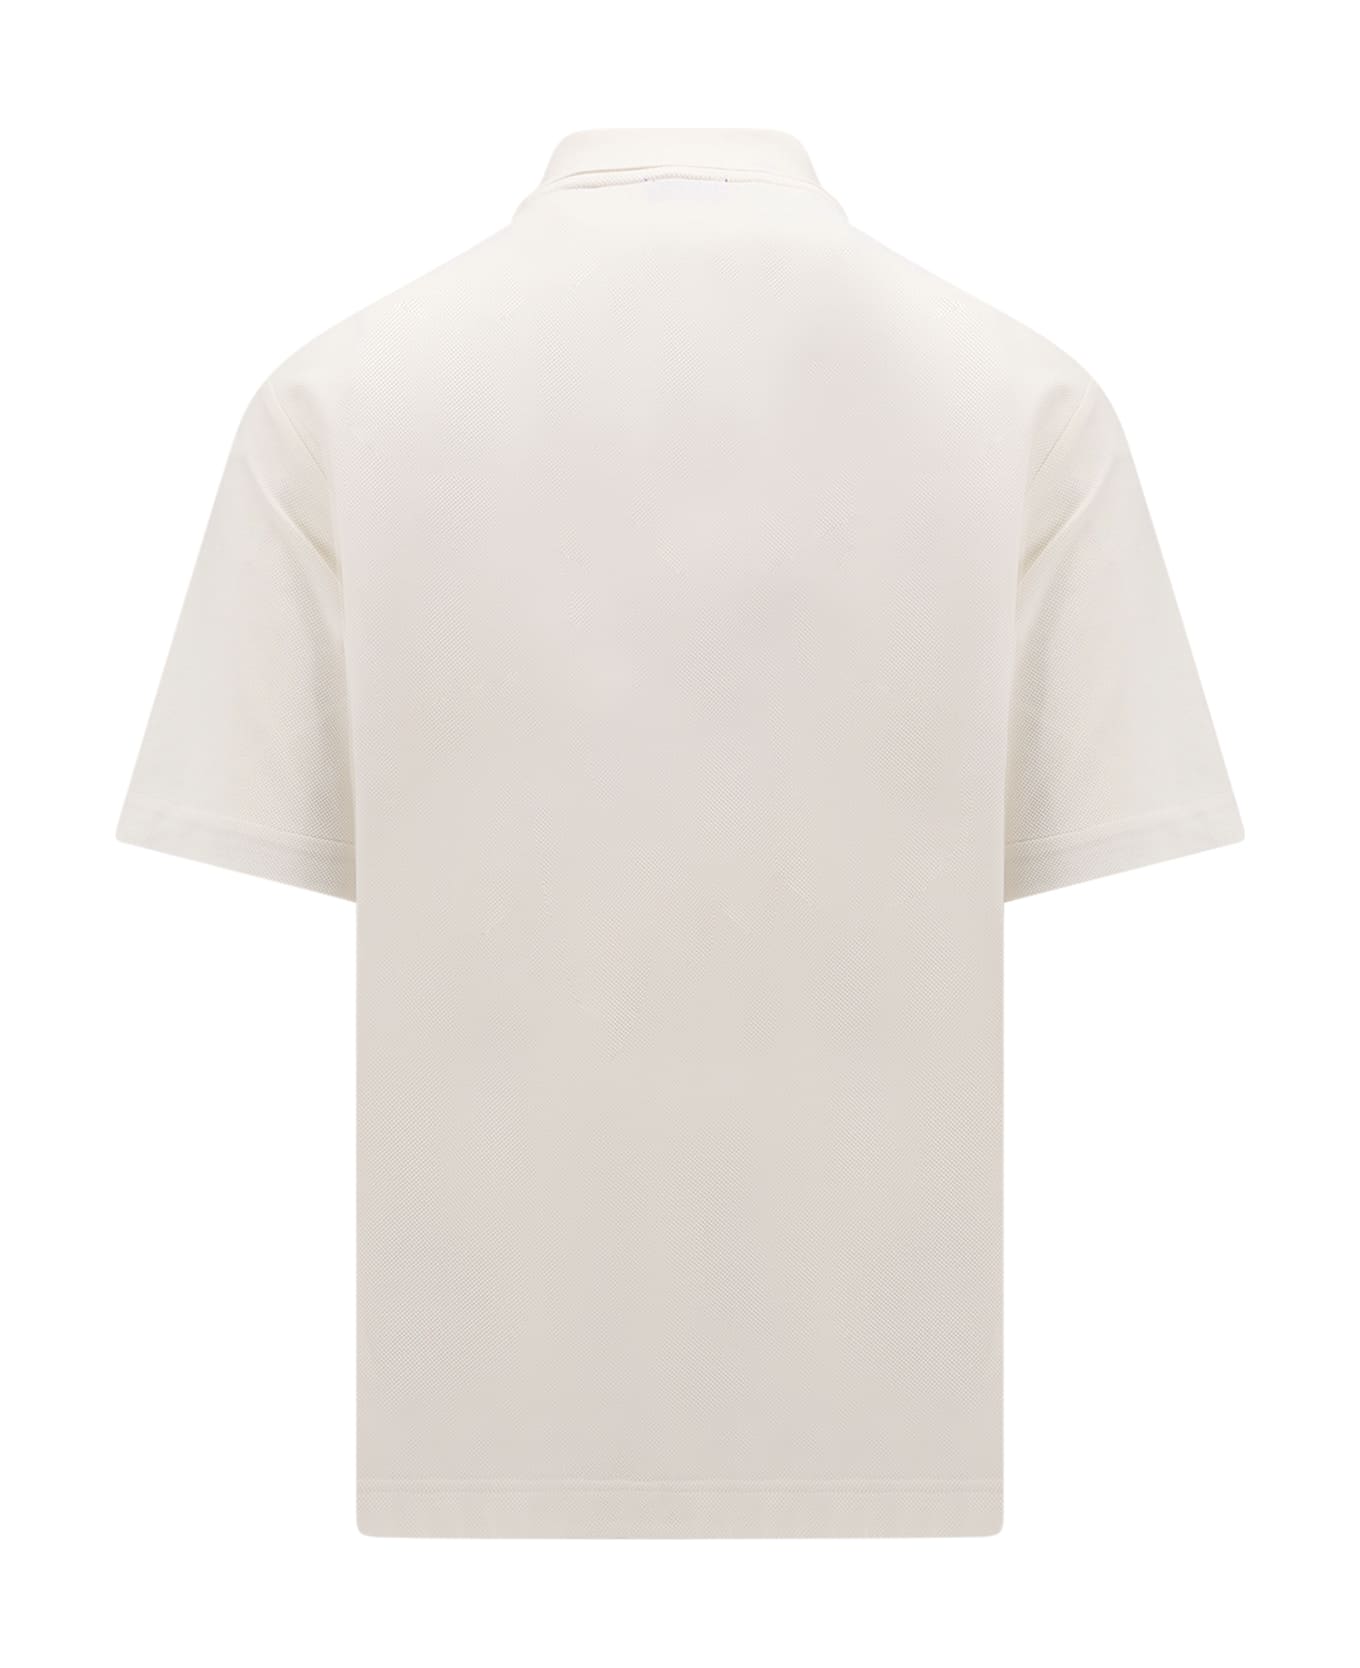 Burberry Polo Shirt - White